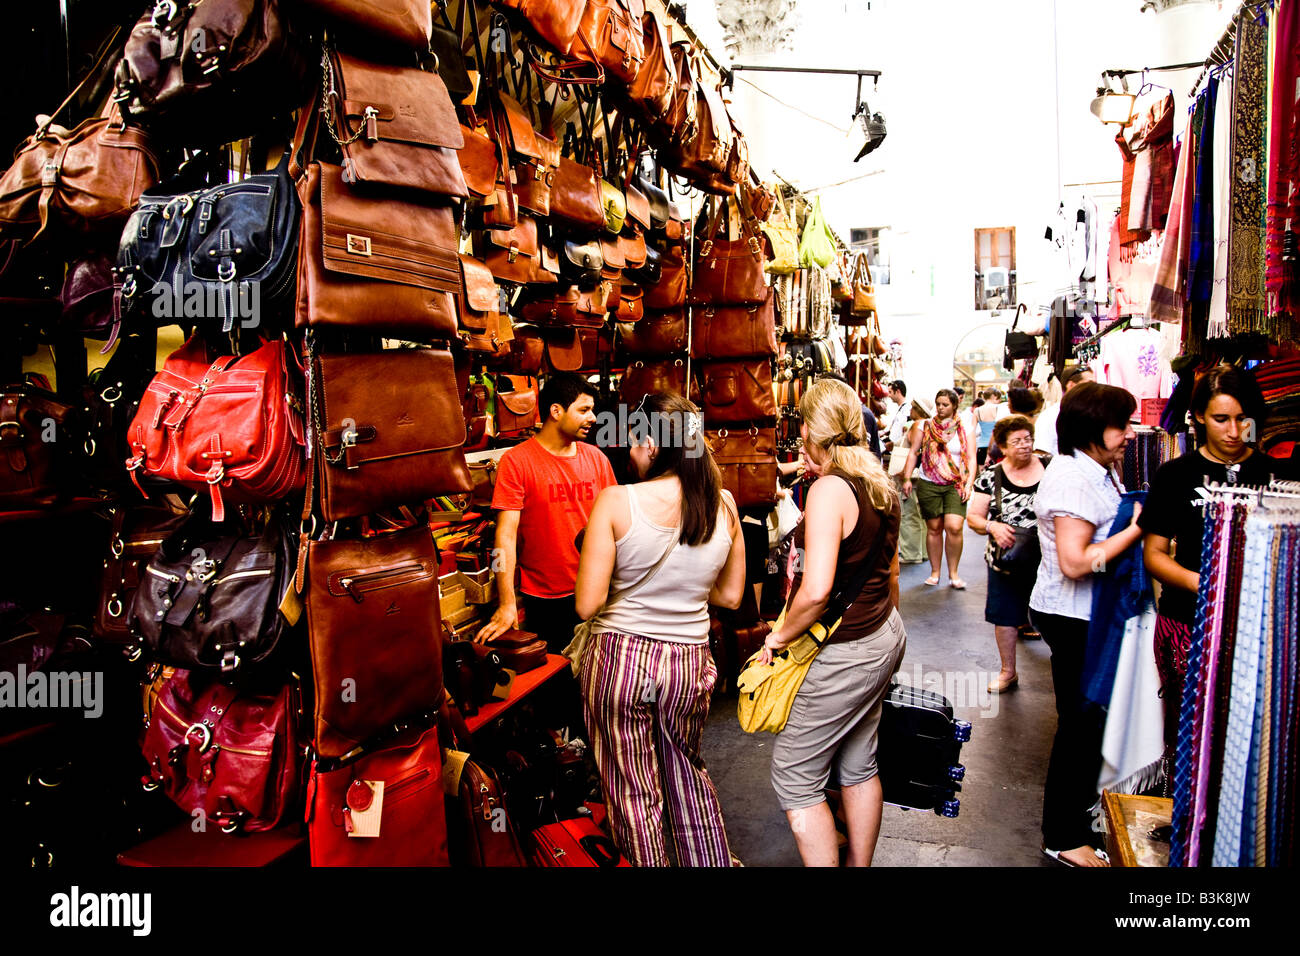 Consommateurs à la recherche de cuir dans un marché à Florence Banque D'Images